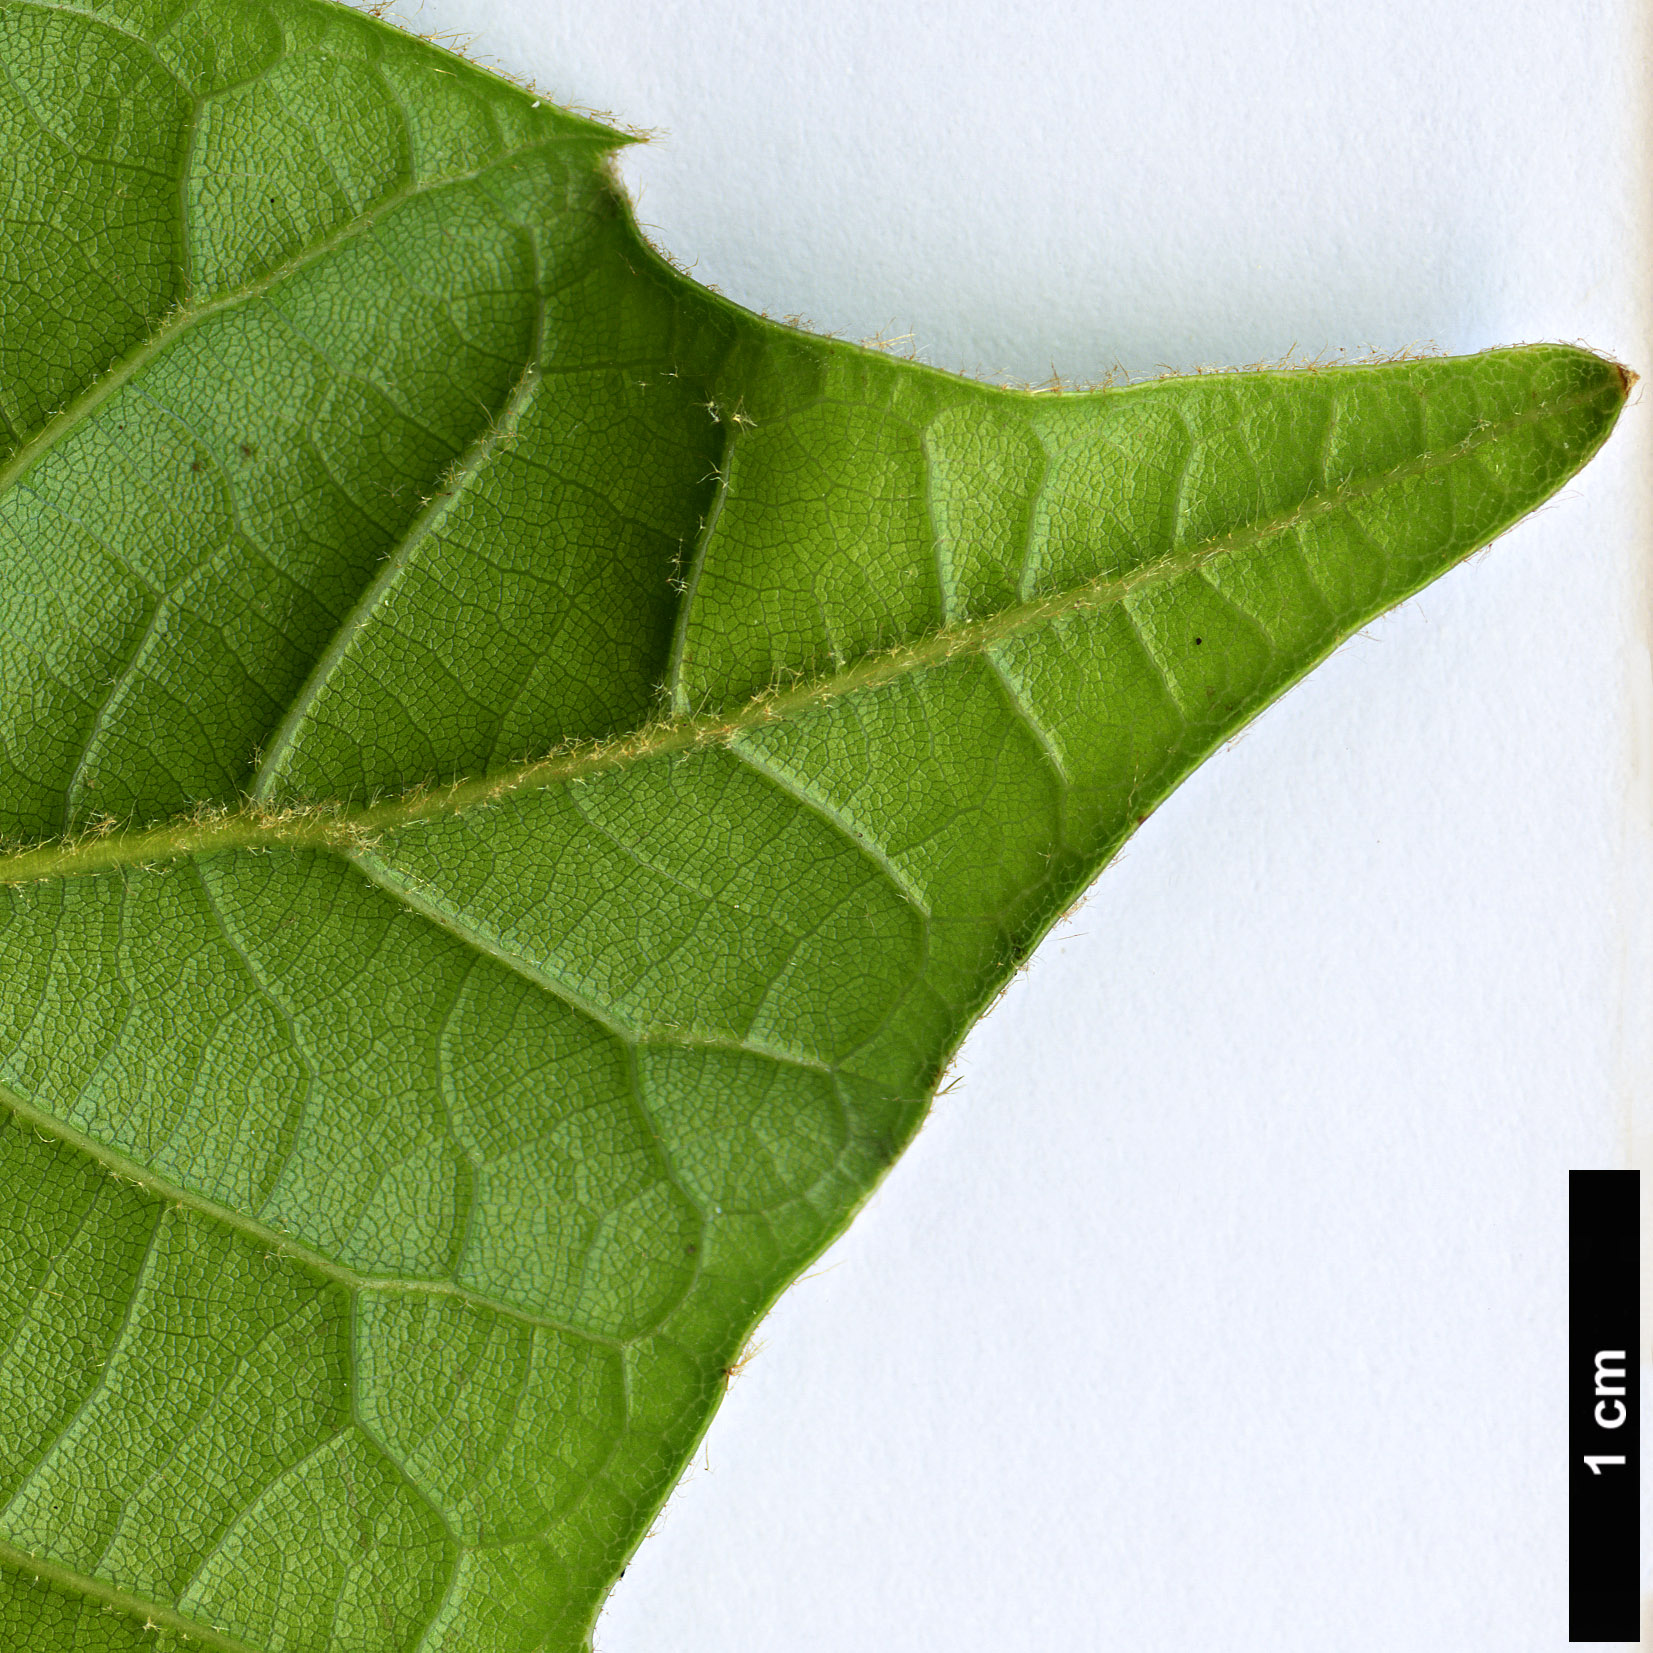 High resolution image: Family: Fagaceae - Genus: Quercus - Taxon: marlipoensis